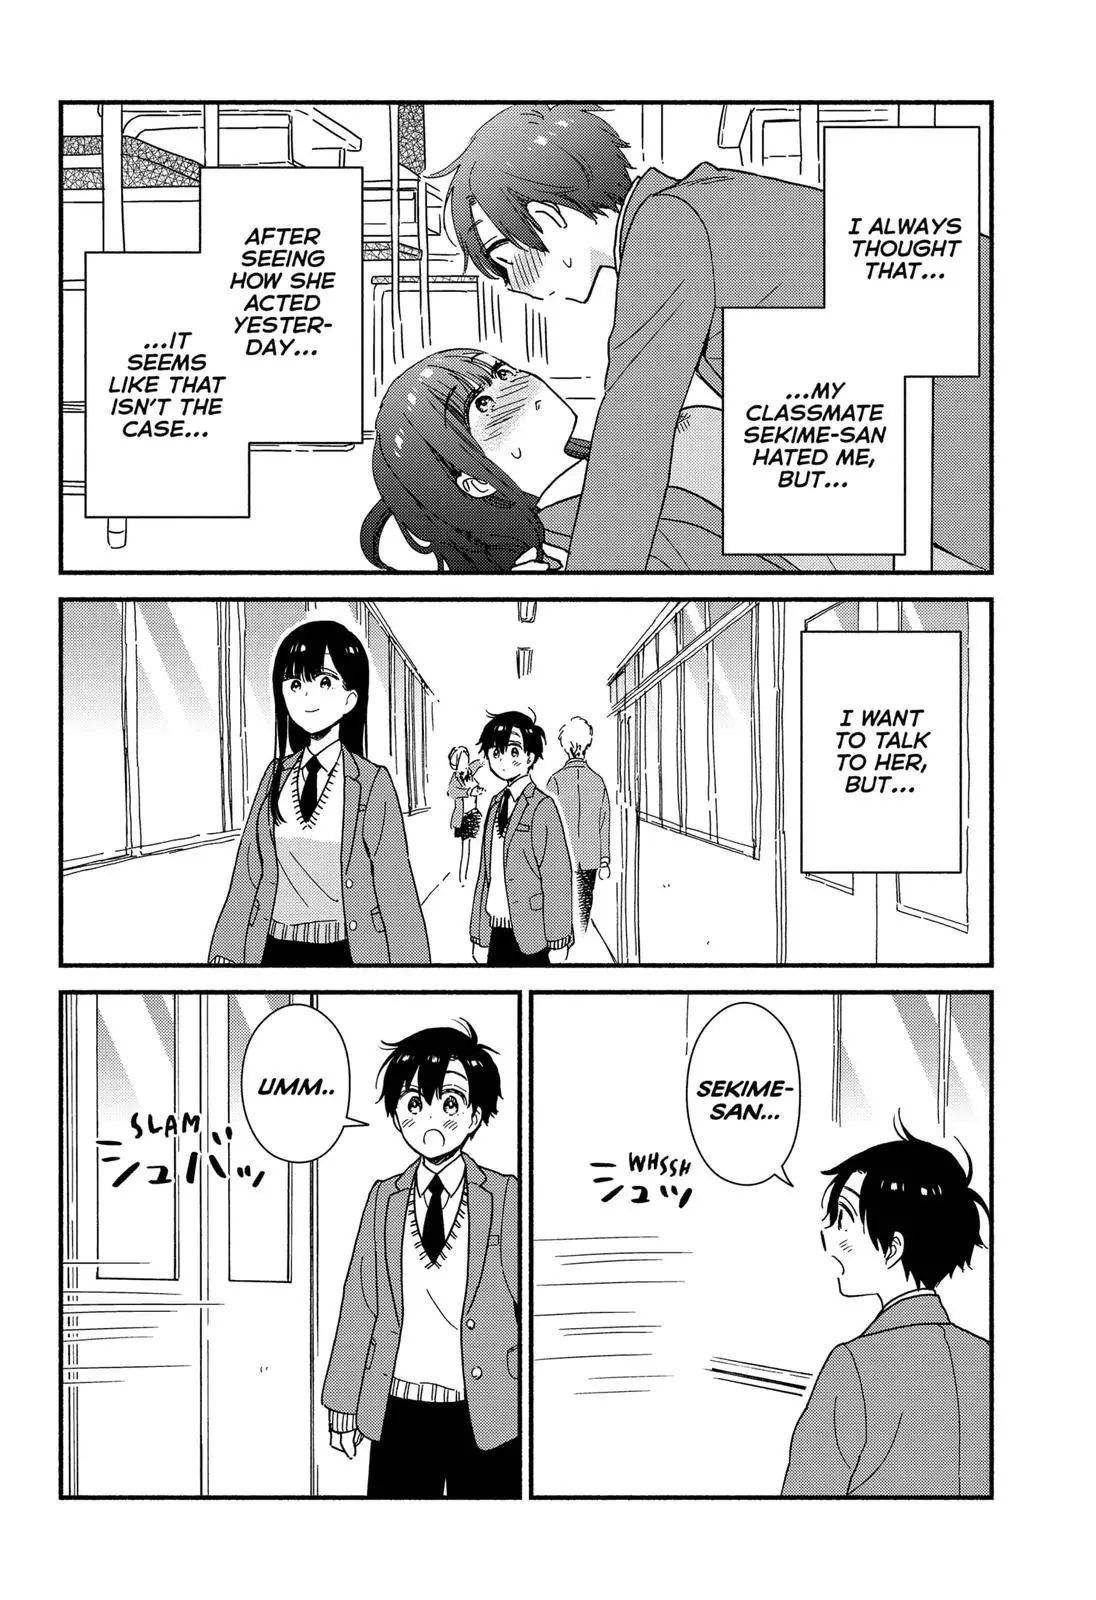 Don't Blush, Sekime-San! - 2 page 2